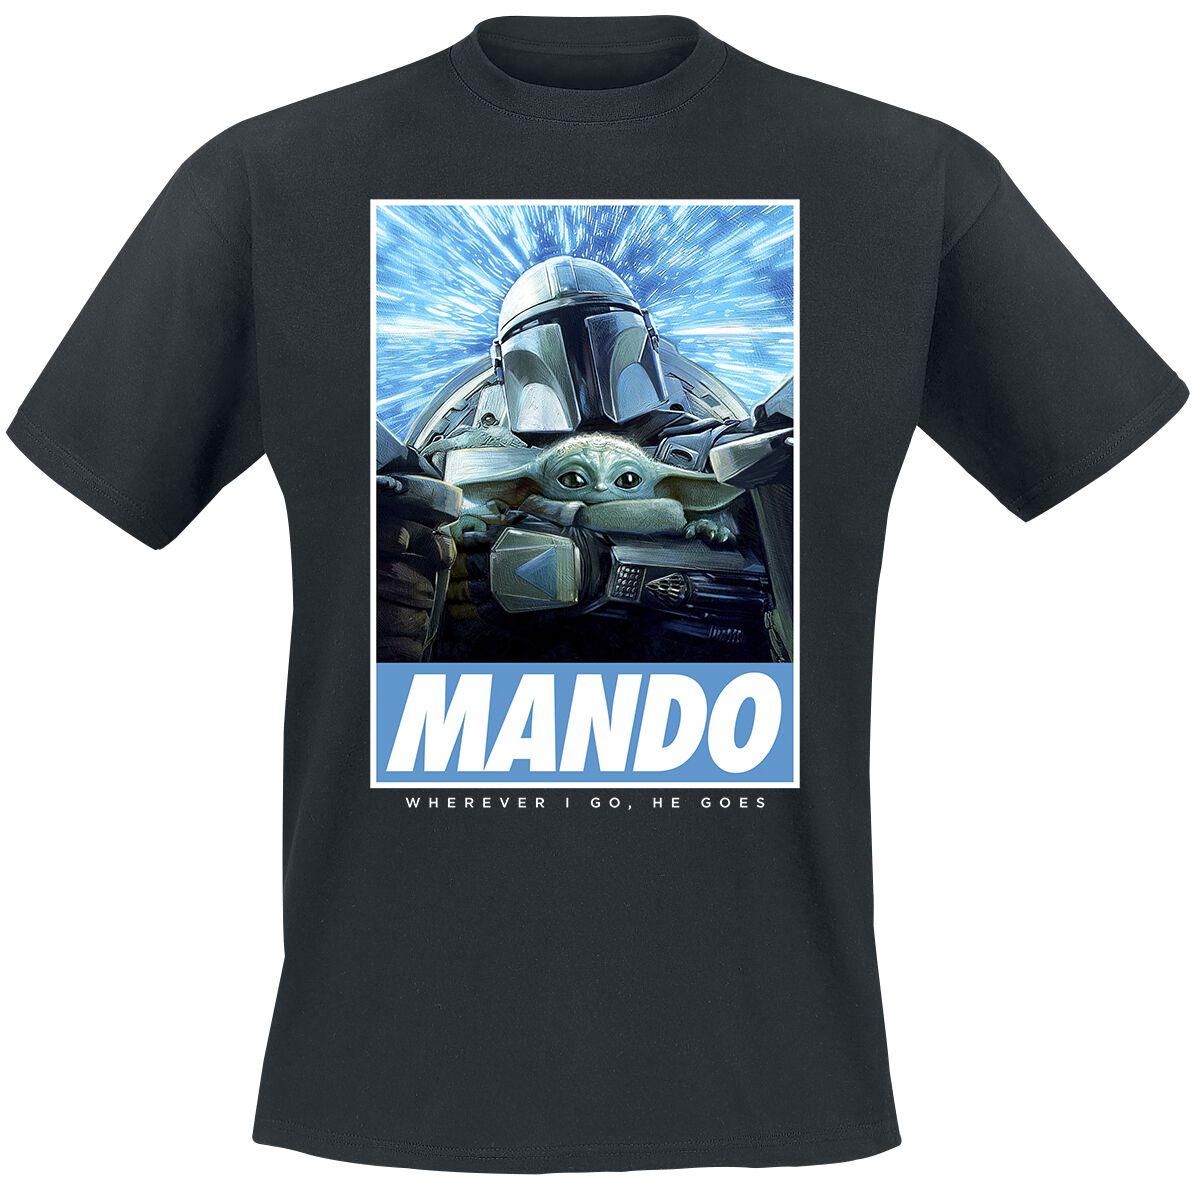 Star Wars T-Shirt - The Mandalorian - Season 3 - Wherever I Go - S bis 4XL - für Männer - Größe XL - schwarz  - Lizenzierter Fanartikel